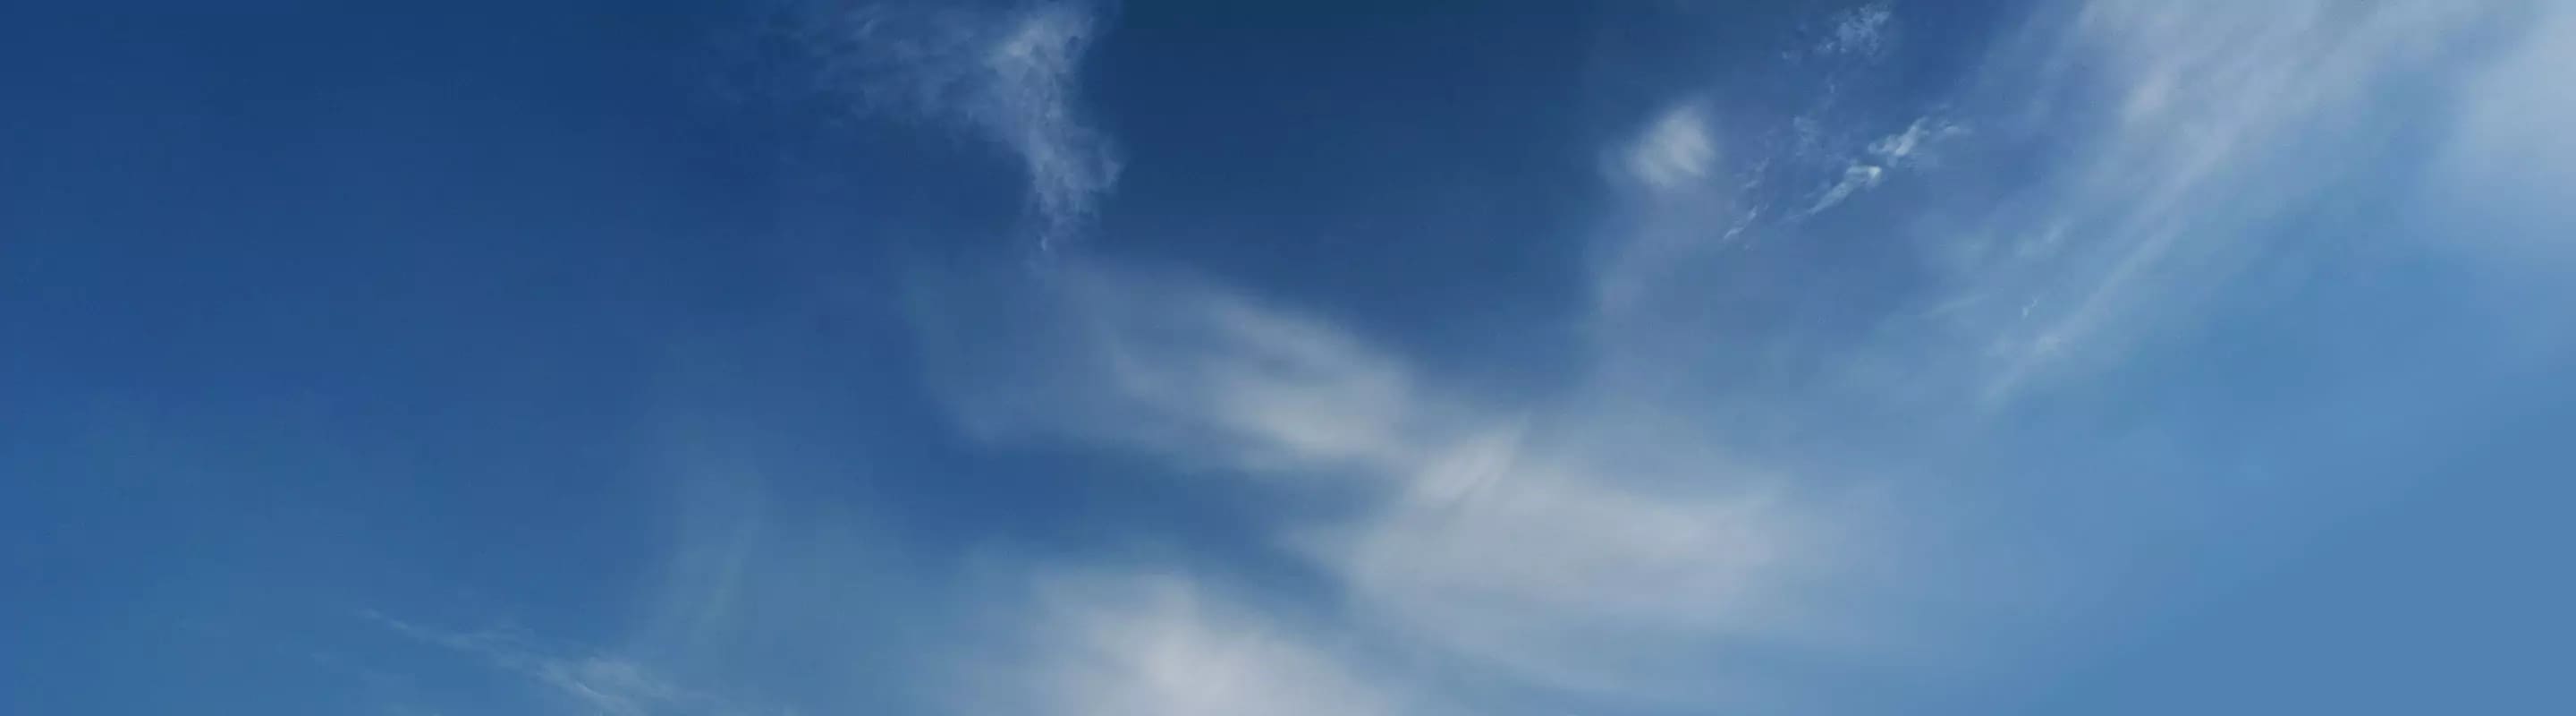 ciel bleu avec des nuages épars